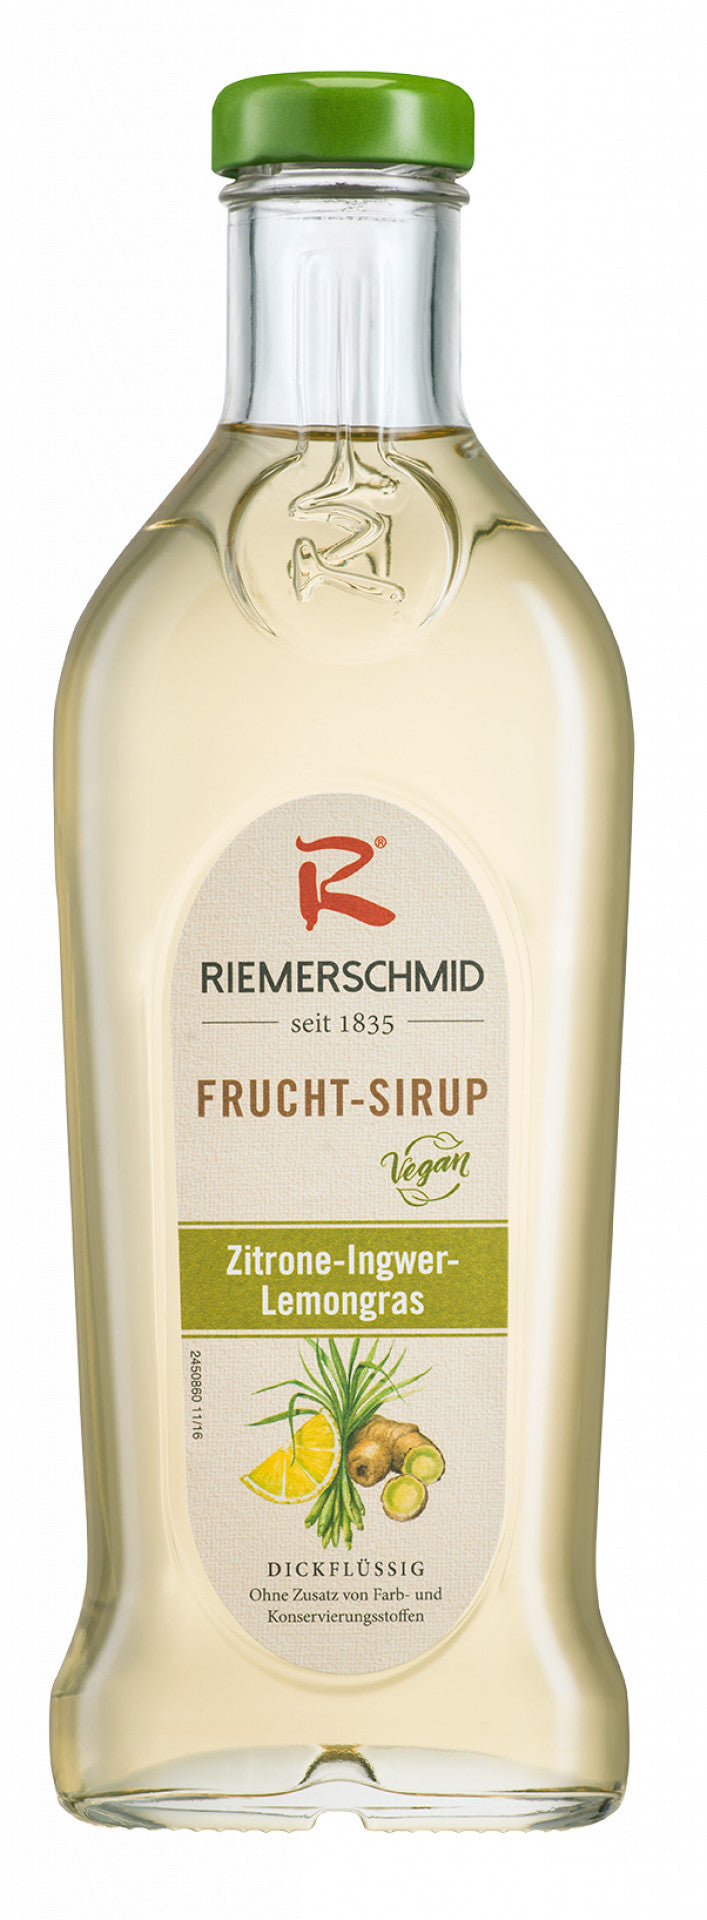 Riemerschmid Frucht-Sirup Zitrone-Ingwer-Lemongras 0,5L